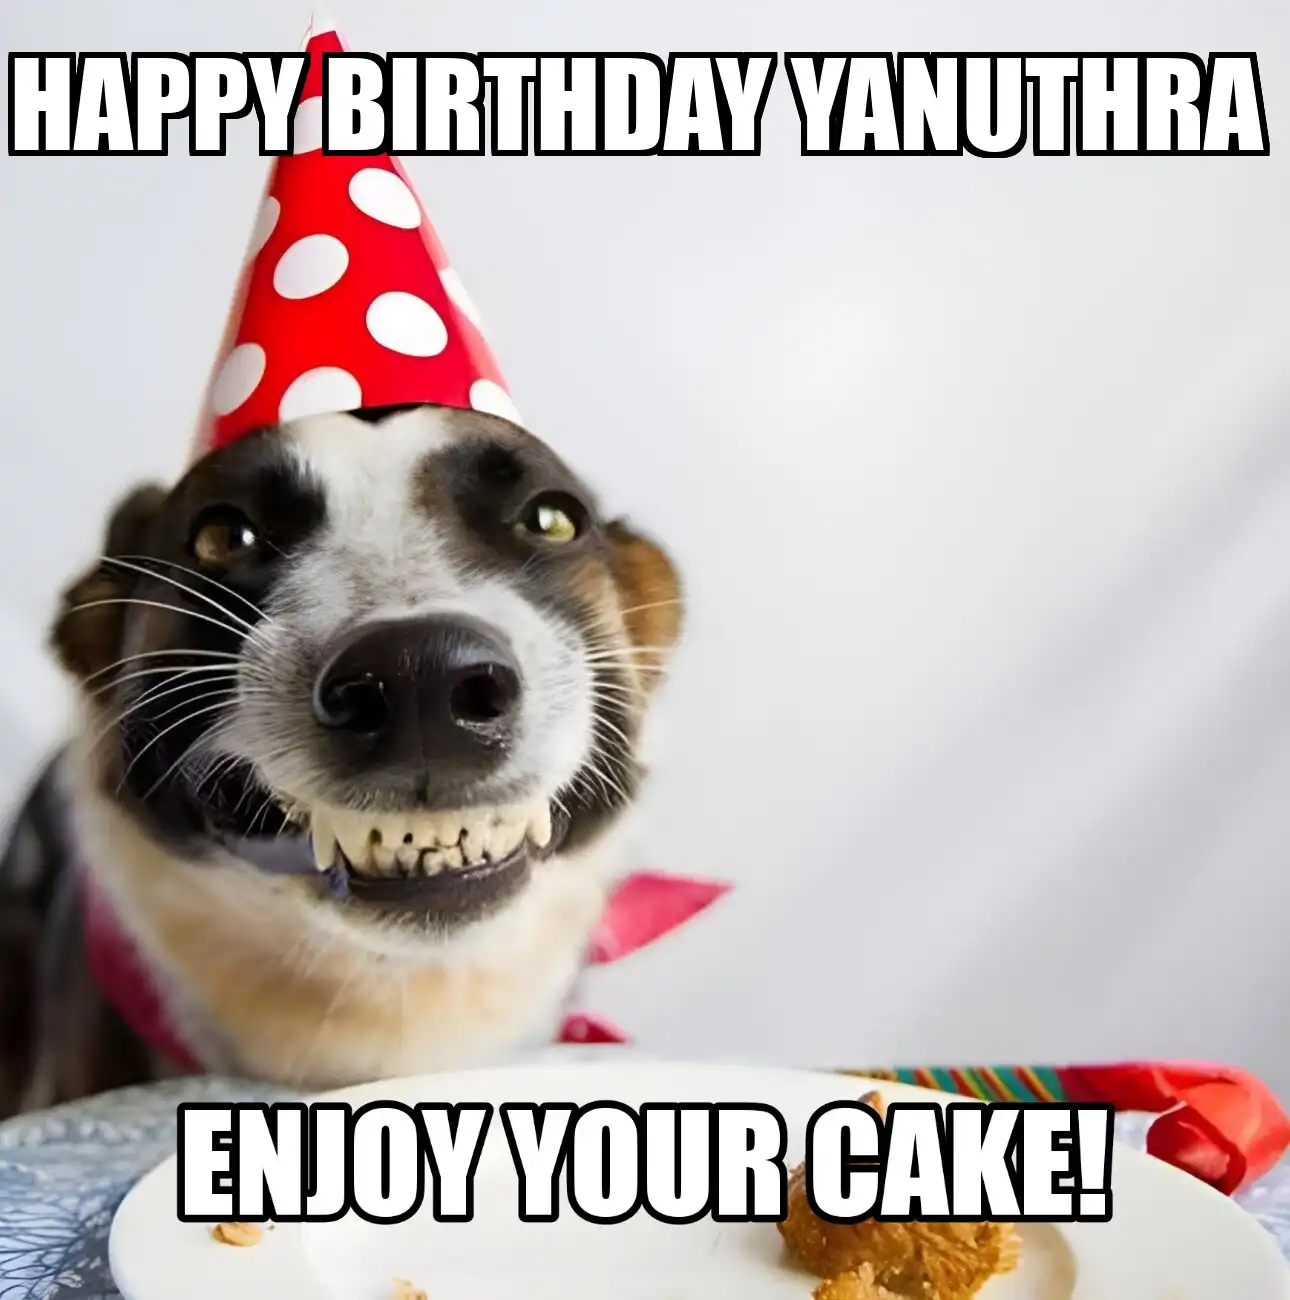 Happy Birthday Yanuthra Enjoy Your Cake Dog Meme